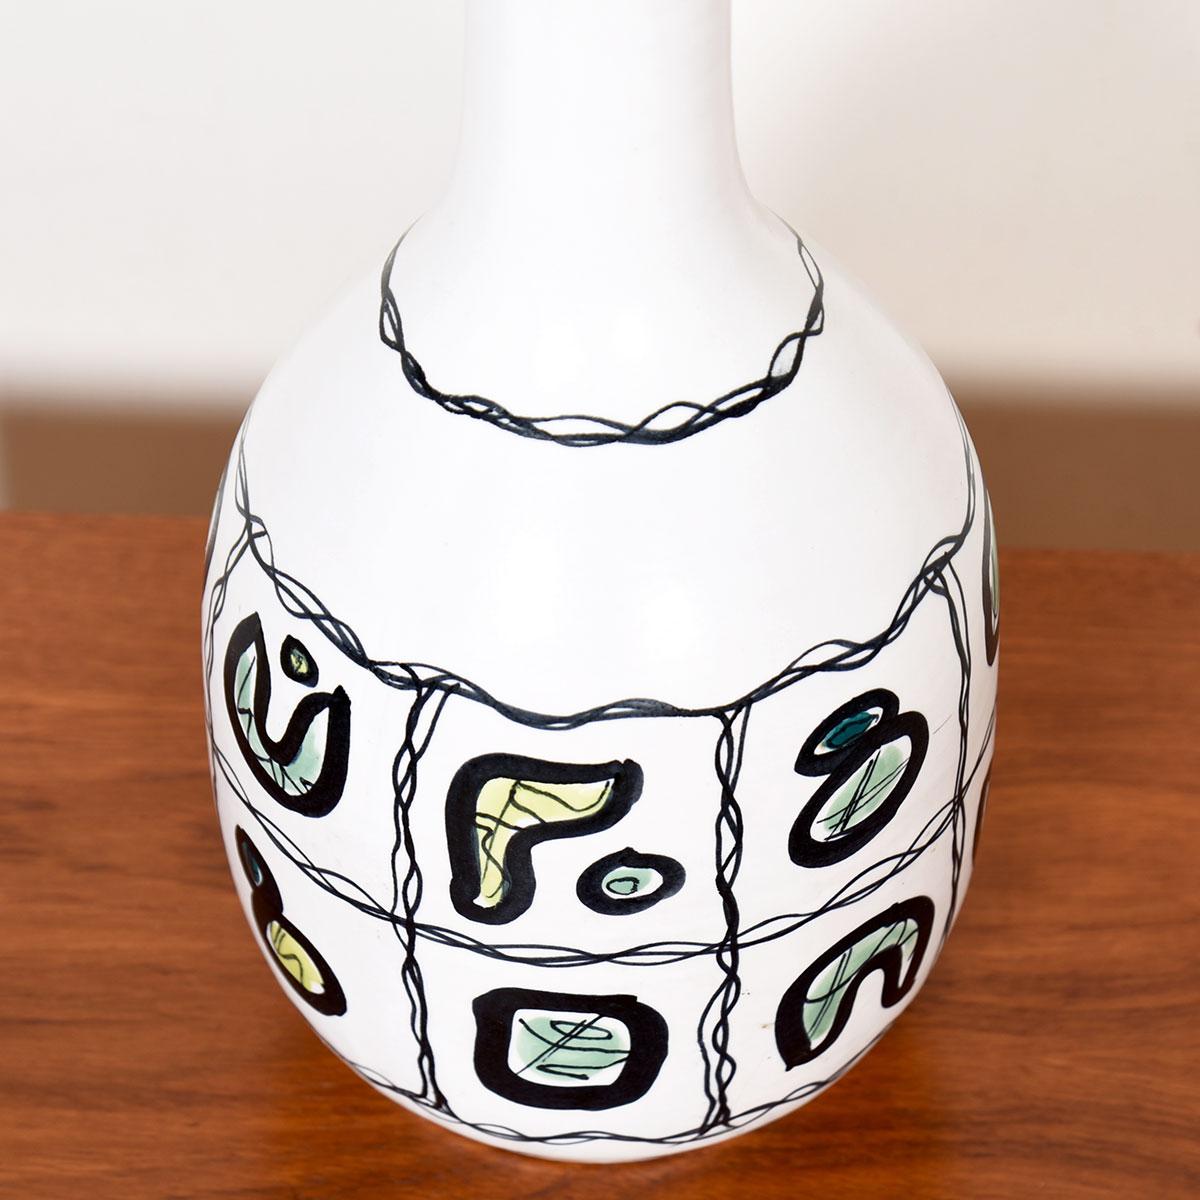 Lampe de table en poterie italienne MCM

Informations complémentaires :
En vedette à Kensington
Cette lampe en poterie ou majolique italienne adopte une forme classique mais avec une décoration inhabituelle. Peinte en blanc mat, l'ampoule de la